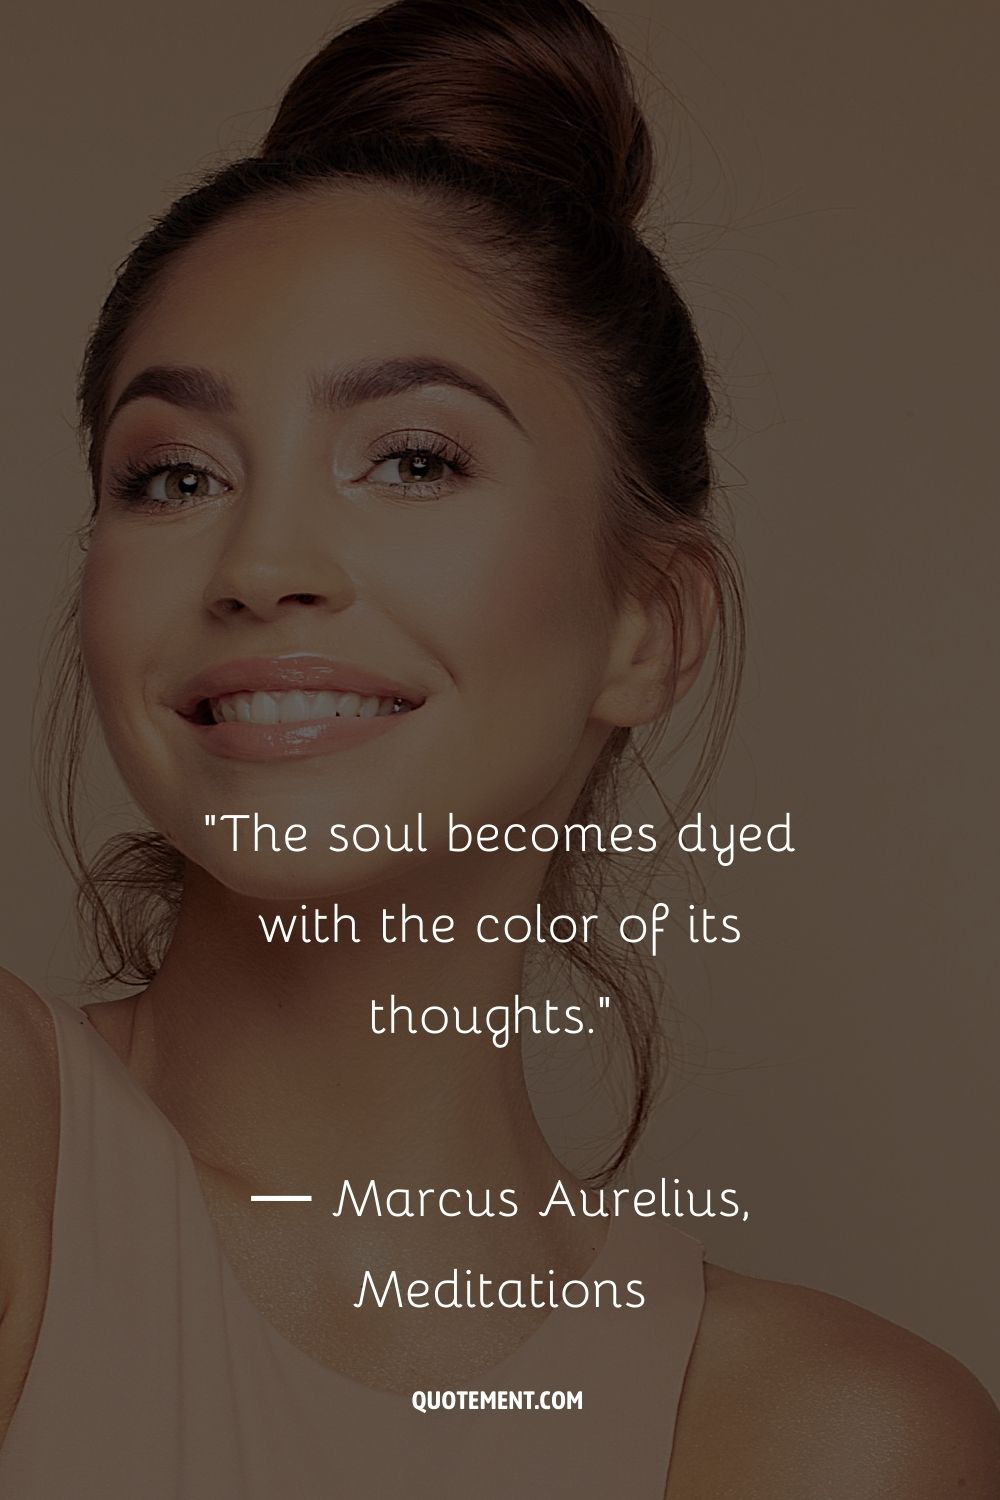 El alma se tiñe del color de sus pensamientos.